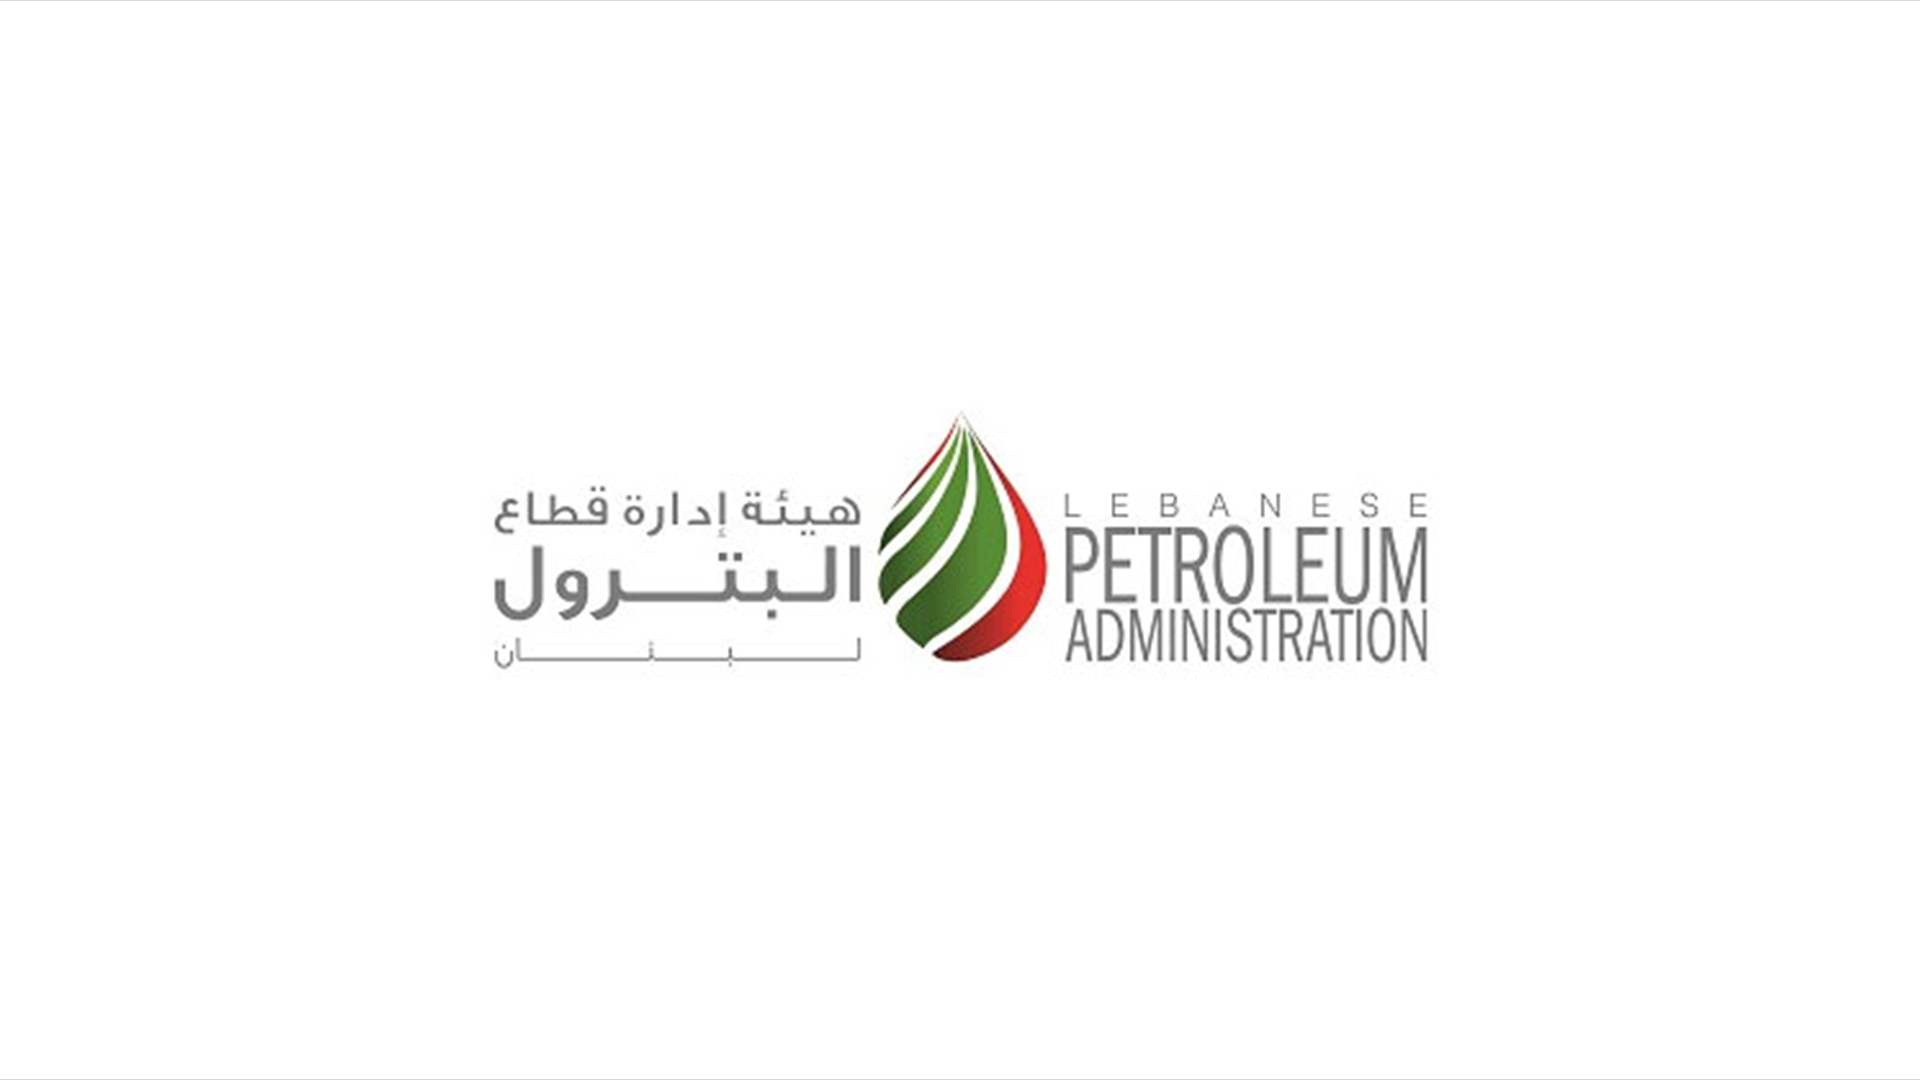 هيئة ادارة قطاع البترول: اسم قانا 1/31 - QANA 31/1 لبئر الاستكشاف في الرقعة رقم 9